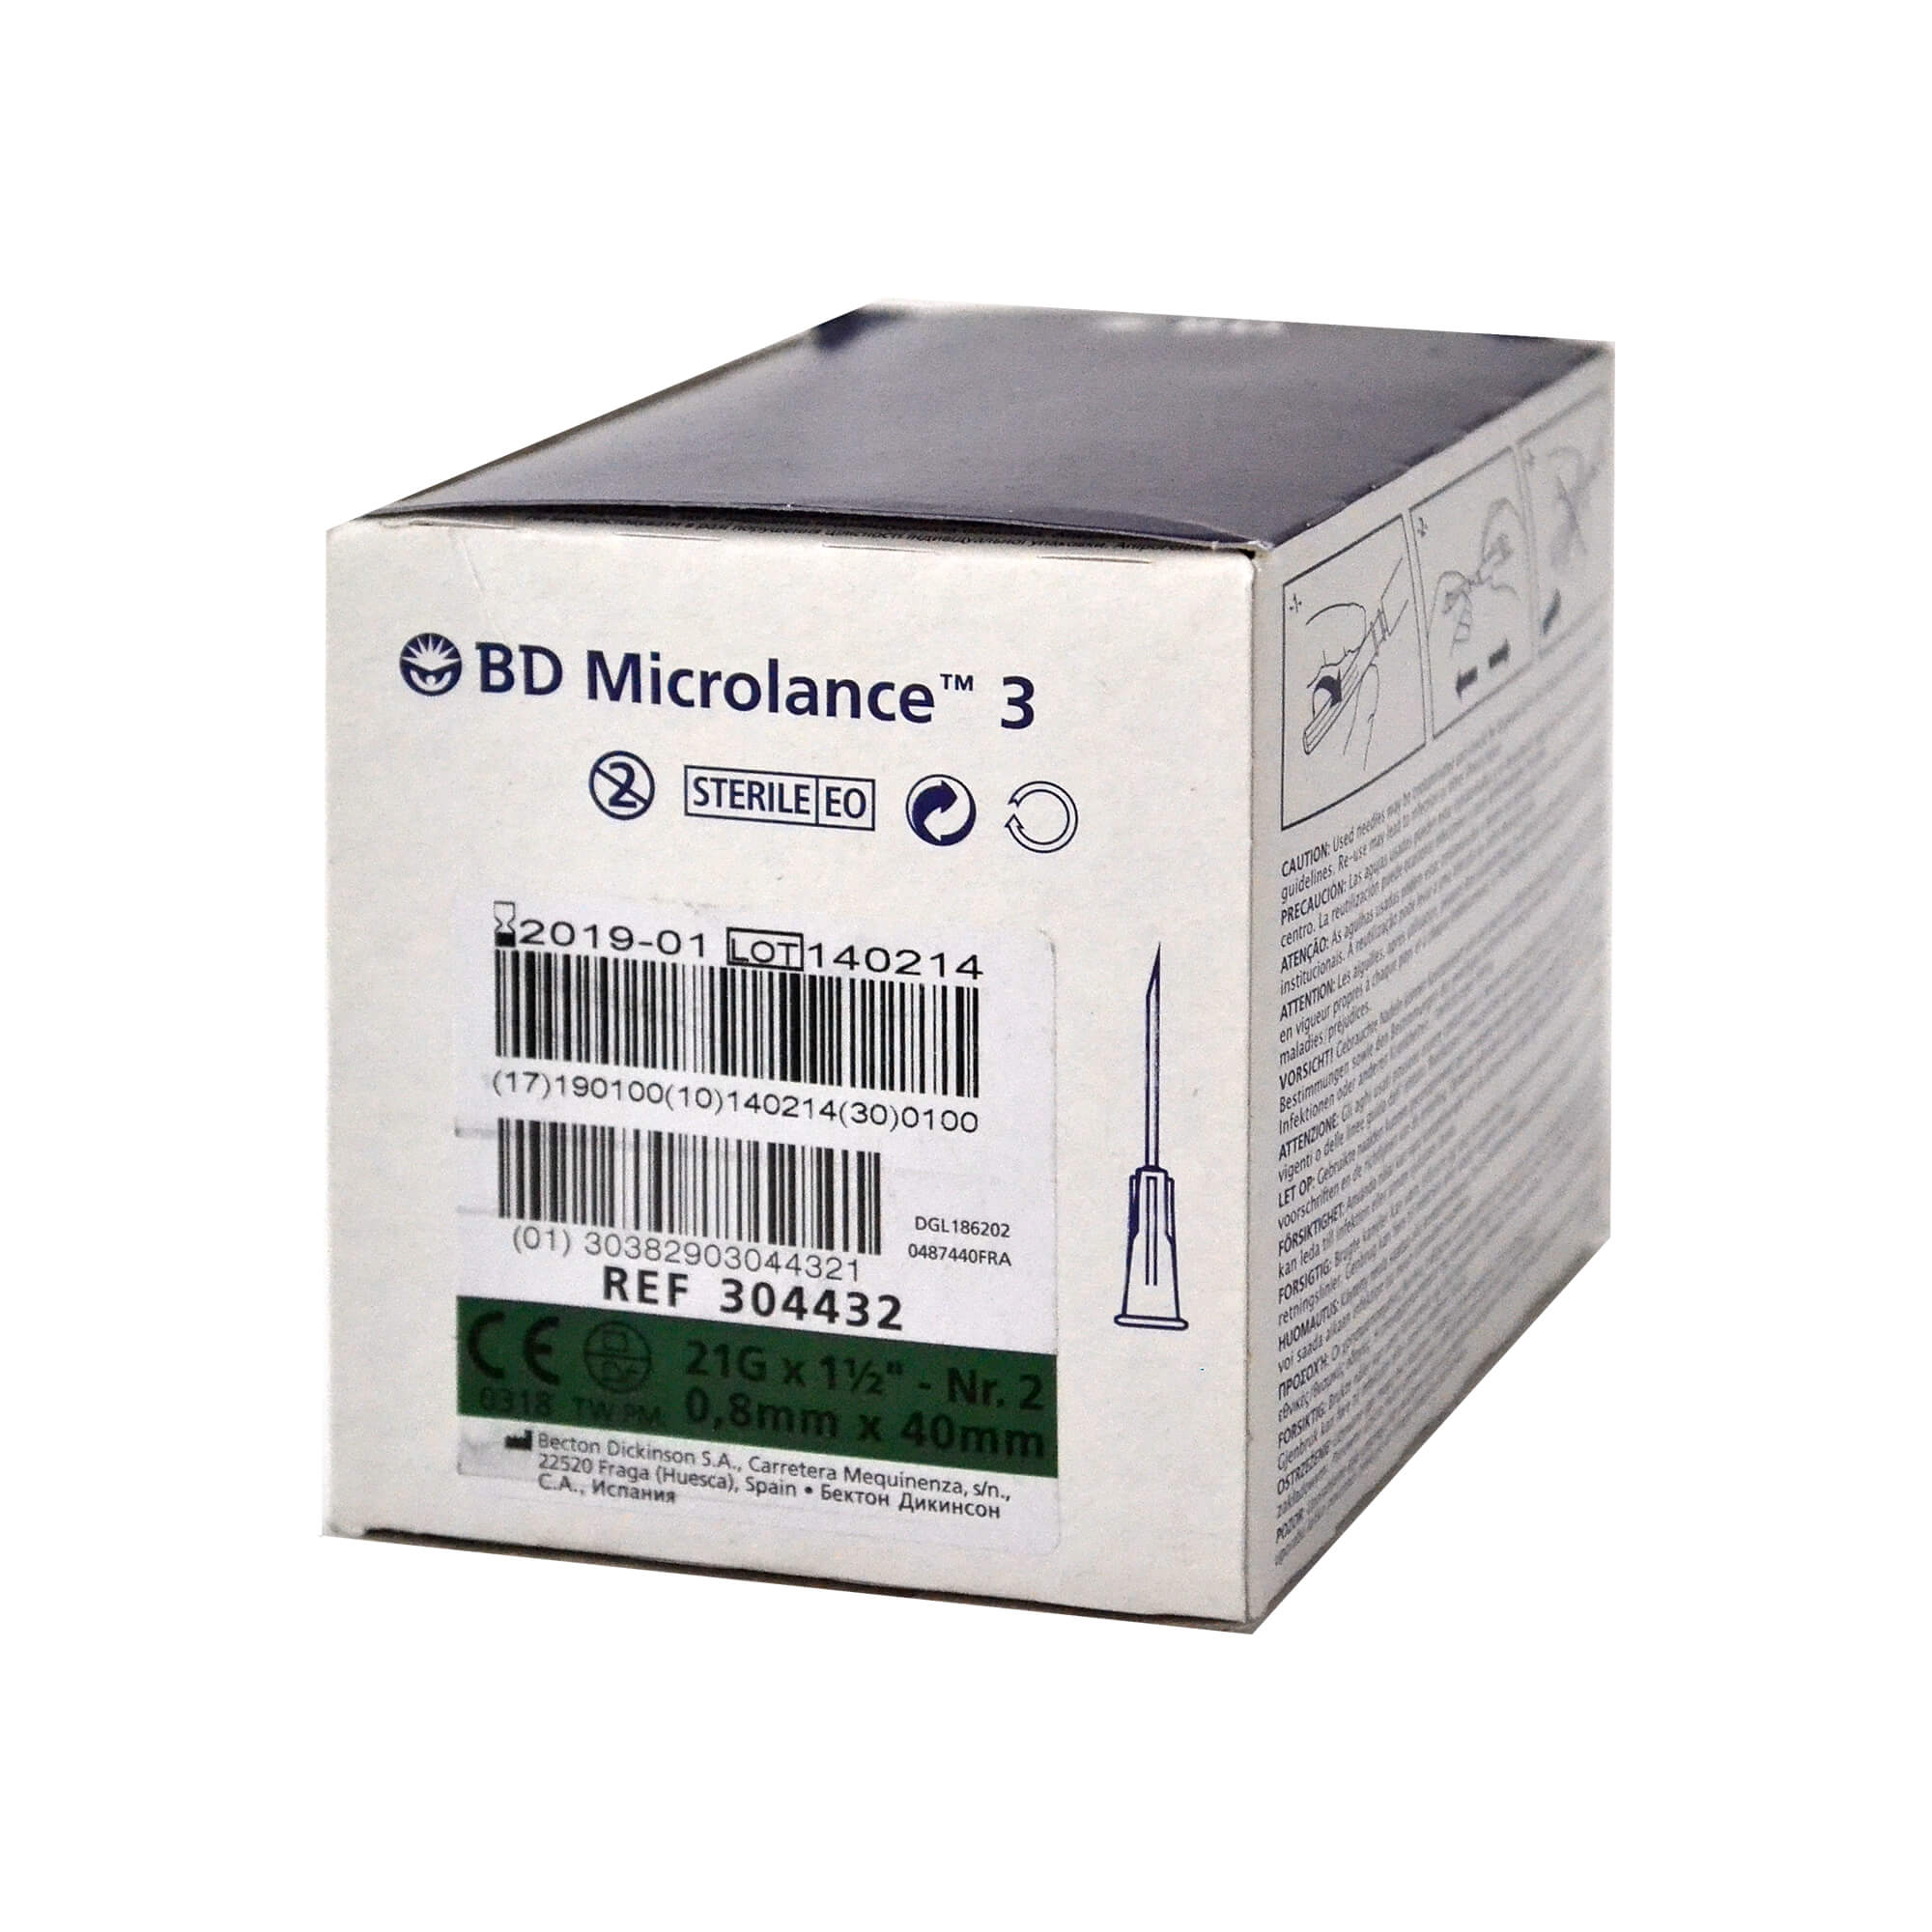 BD Microlance 3 Kanüle, 21 G x 1 1/2", Nr. 2,  0,8 mm x 40 mm.